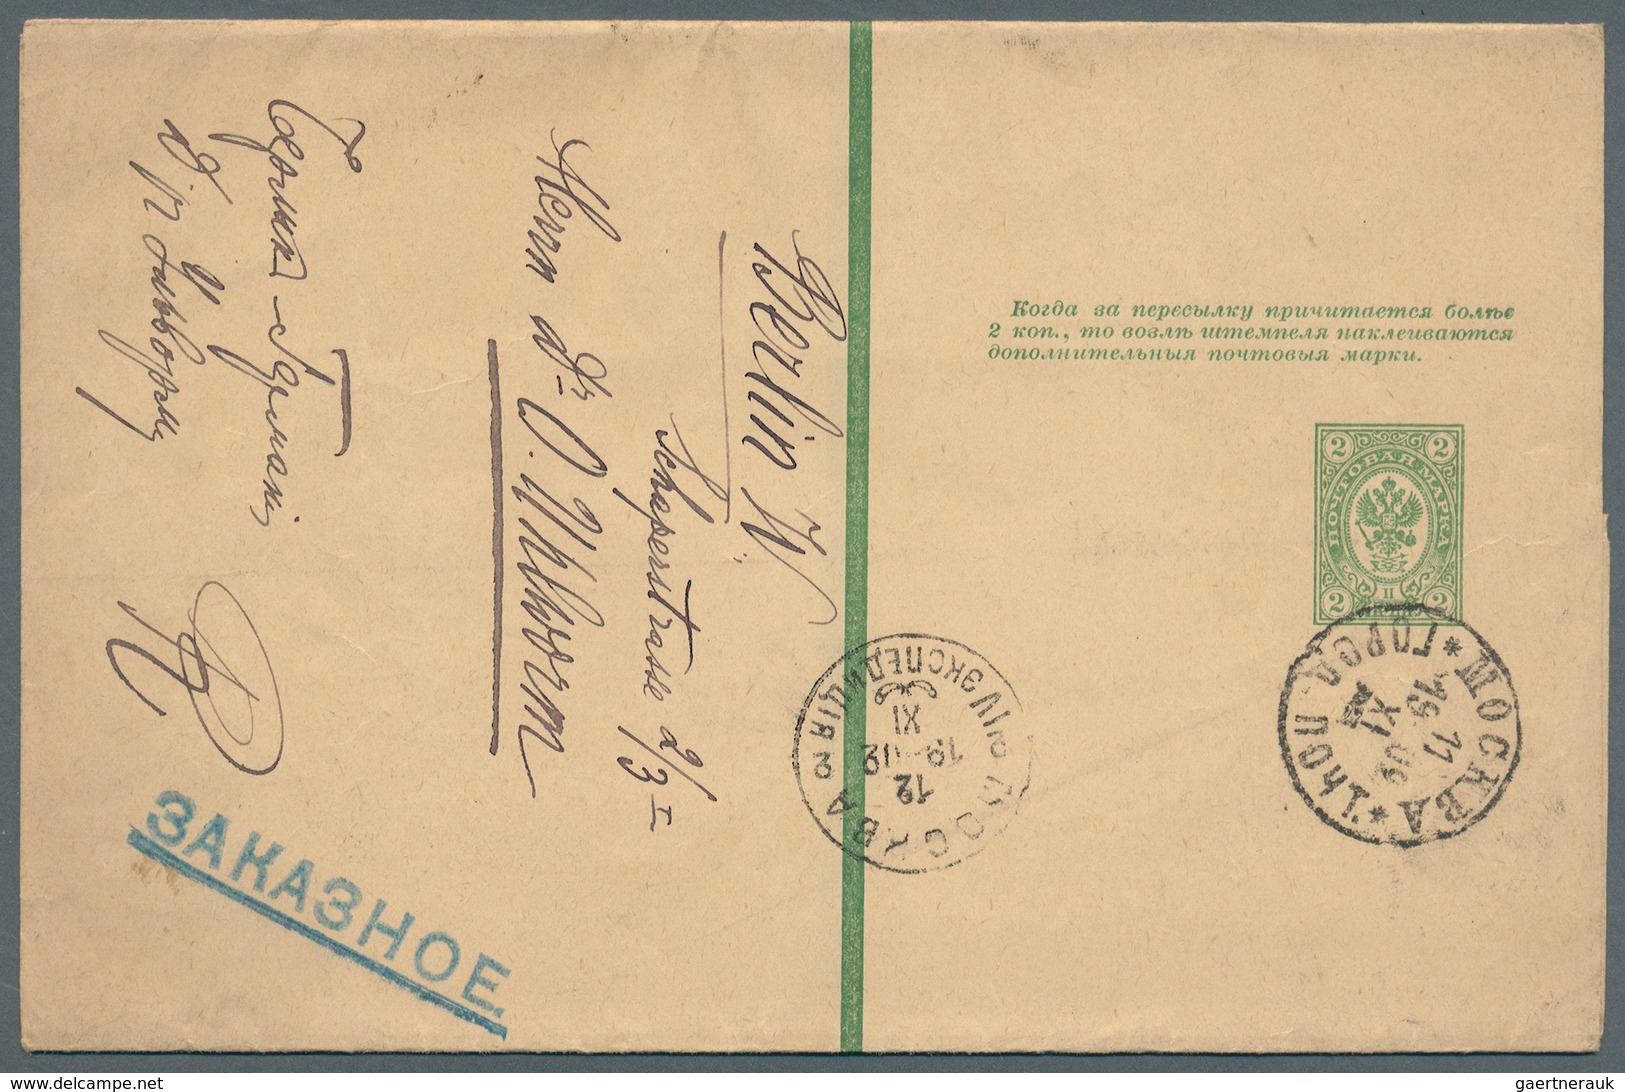 Russland - Ganzsachen: 1903/09, 4 Ganzsachen-Streifbänder 2 K. grün, davon 3 mit interessanten Zusat